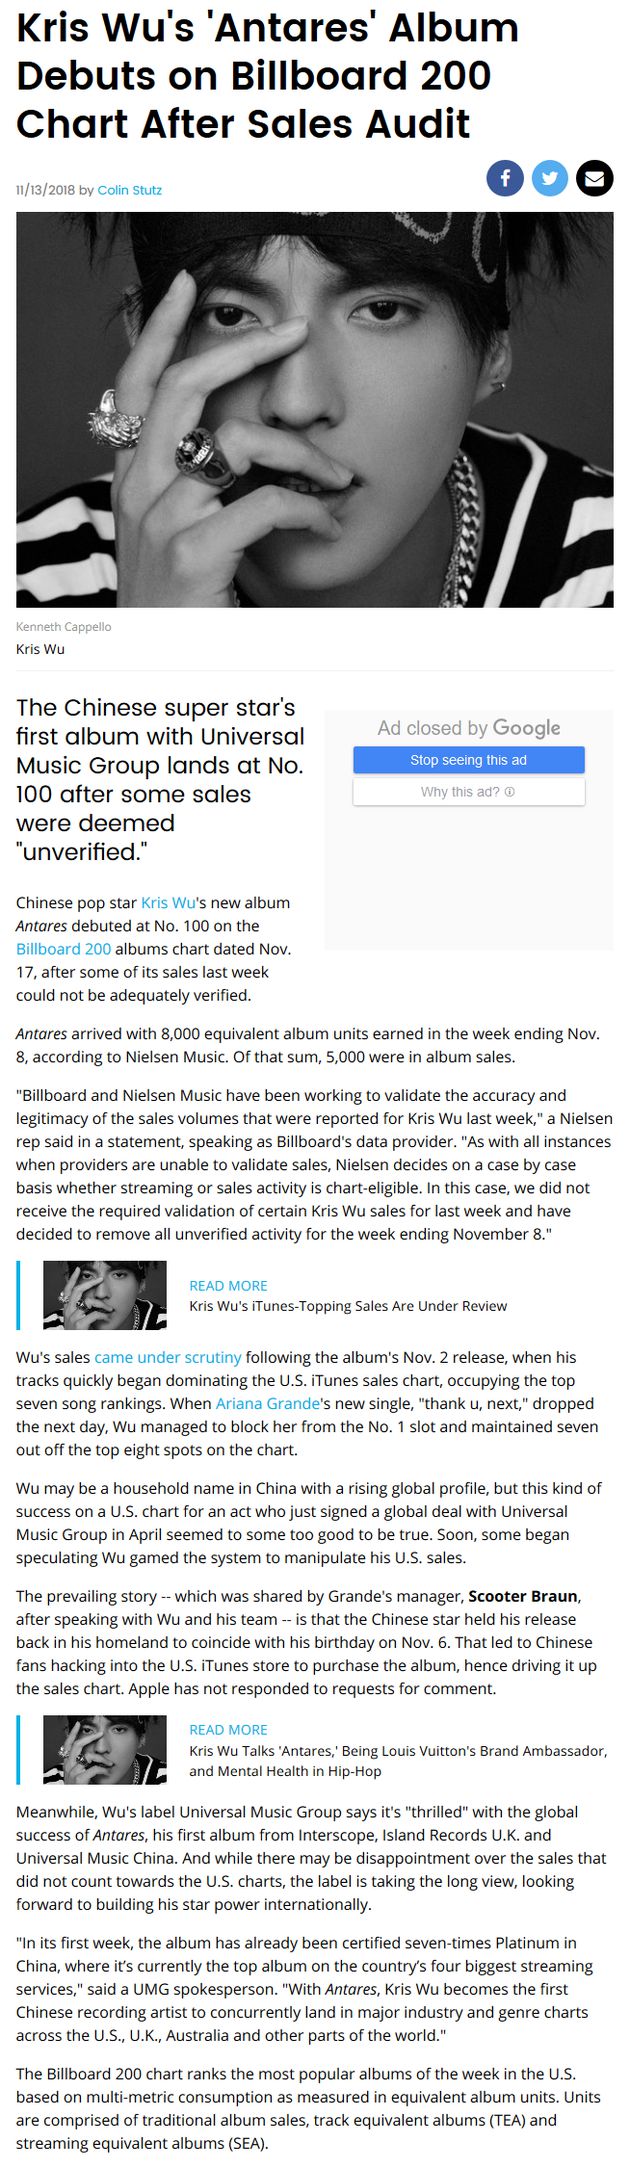 Billboard榜单核实完成:吴亦凡排在专辑榜第100名